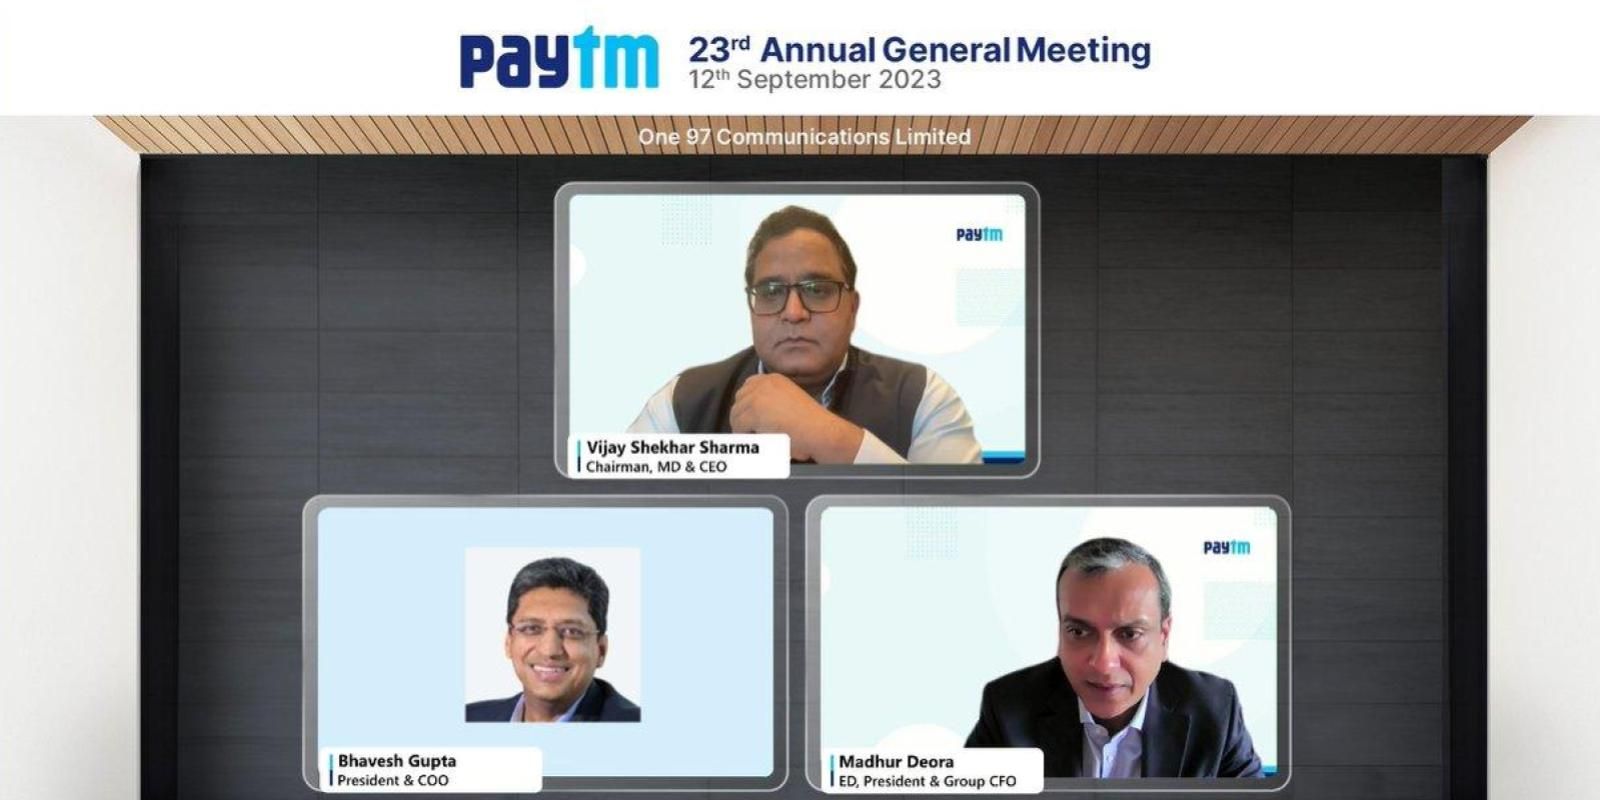 Paytm has more than a million shareholders: Vijay Shekhar Sharma